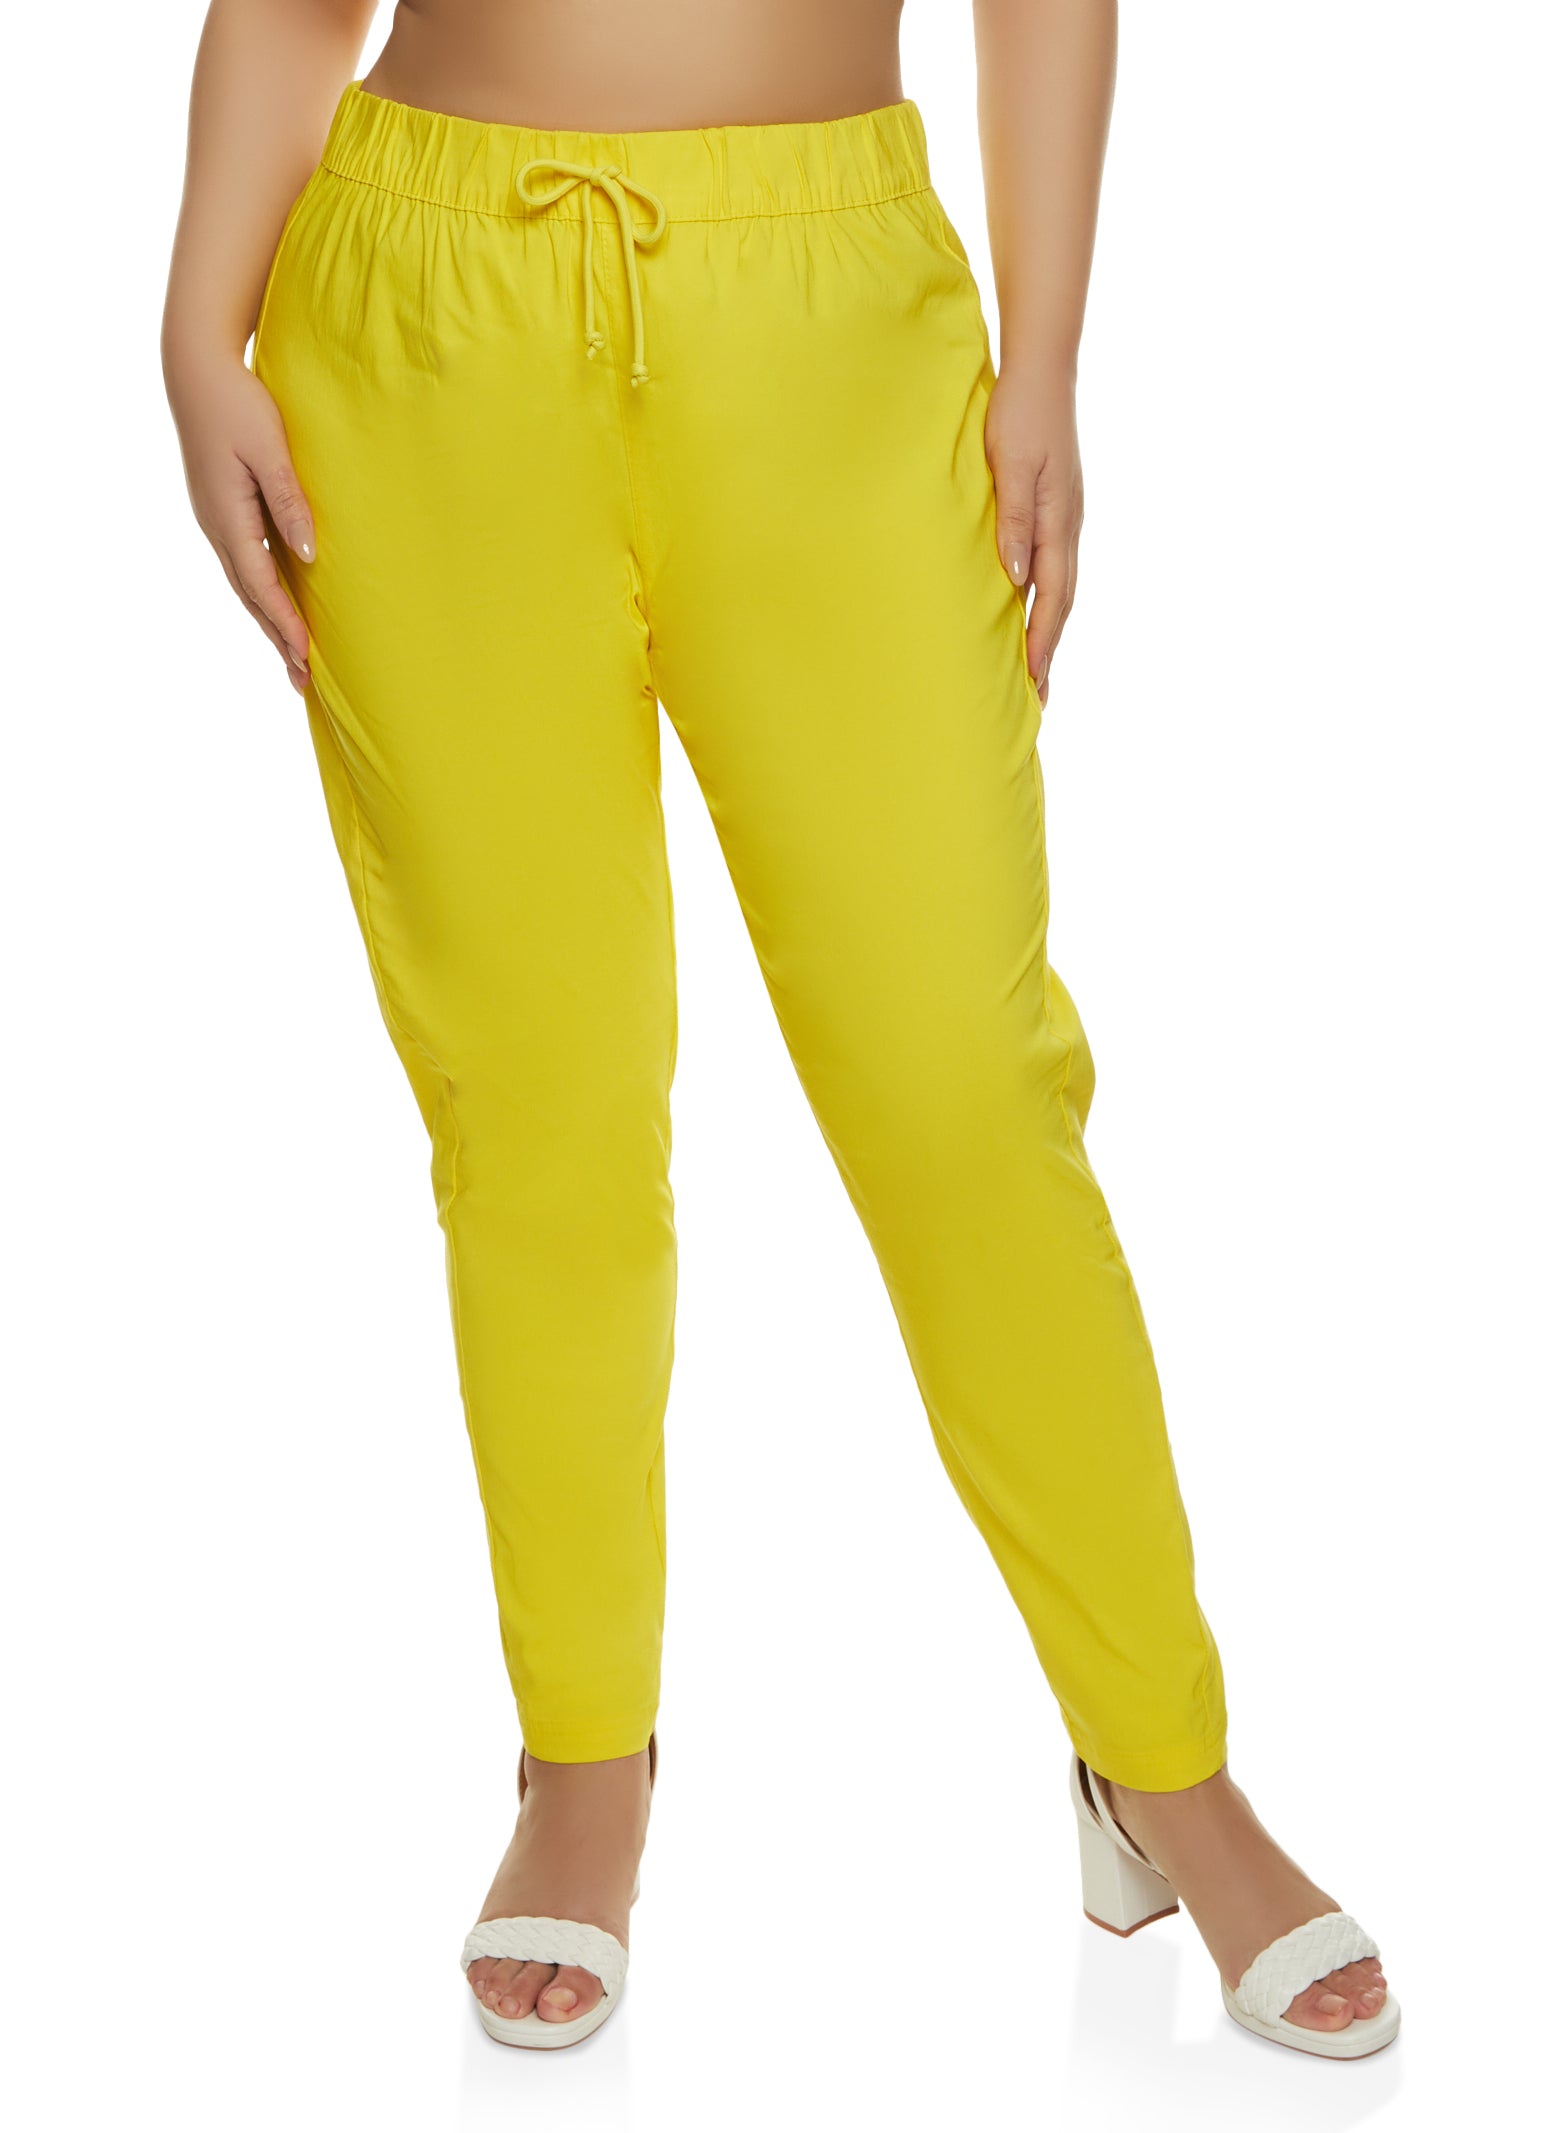 Women Plus Size yellow Sleeveless top and matching palazzo pants